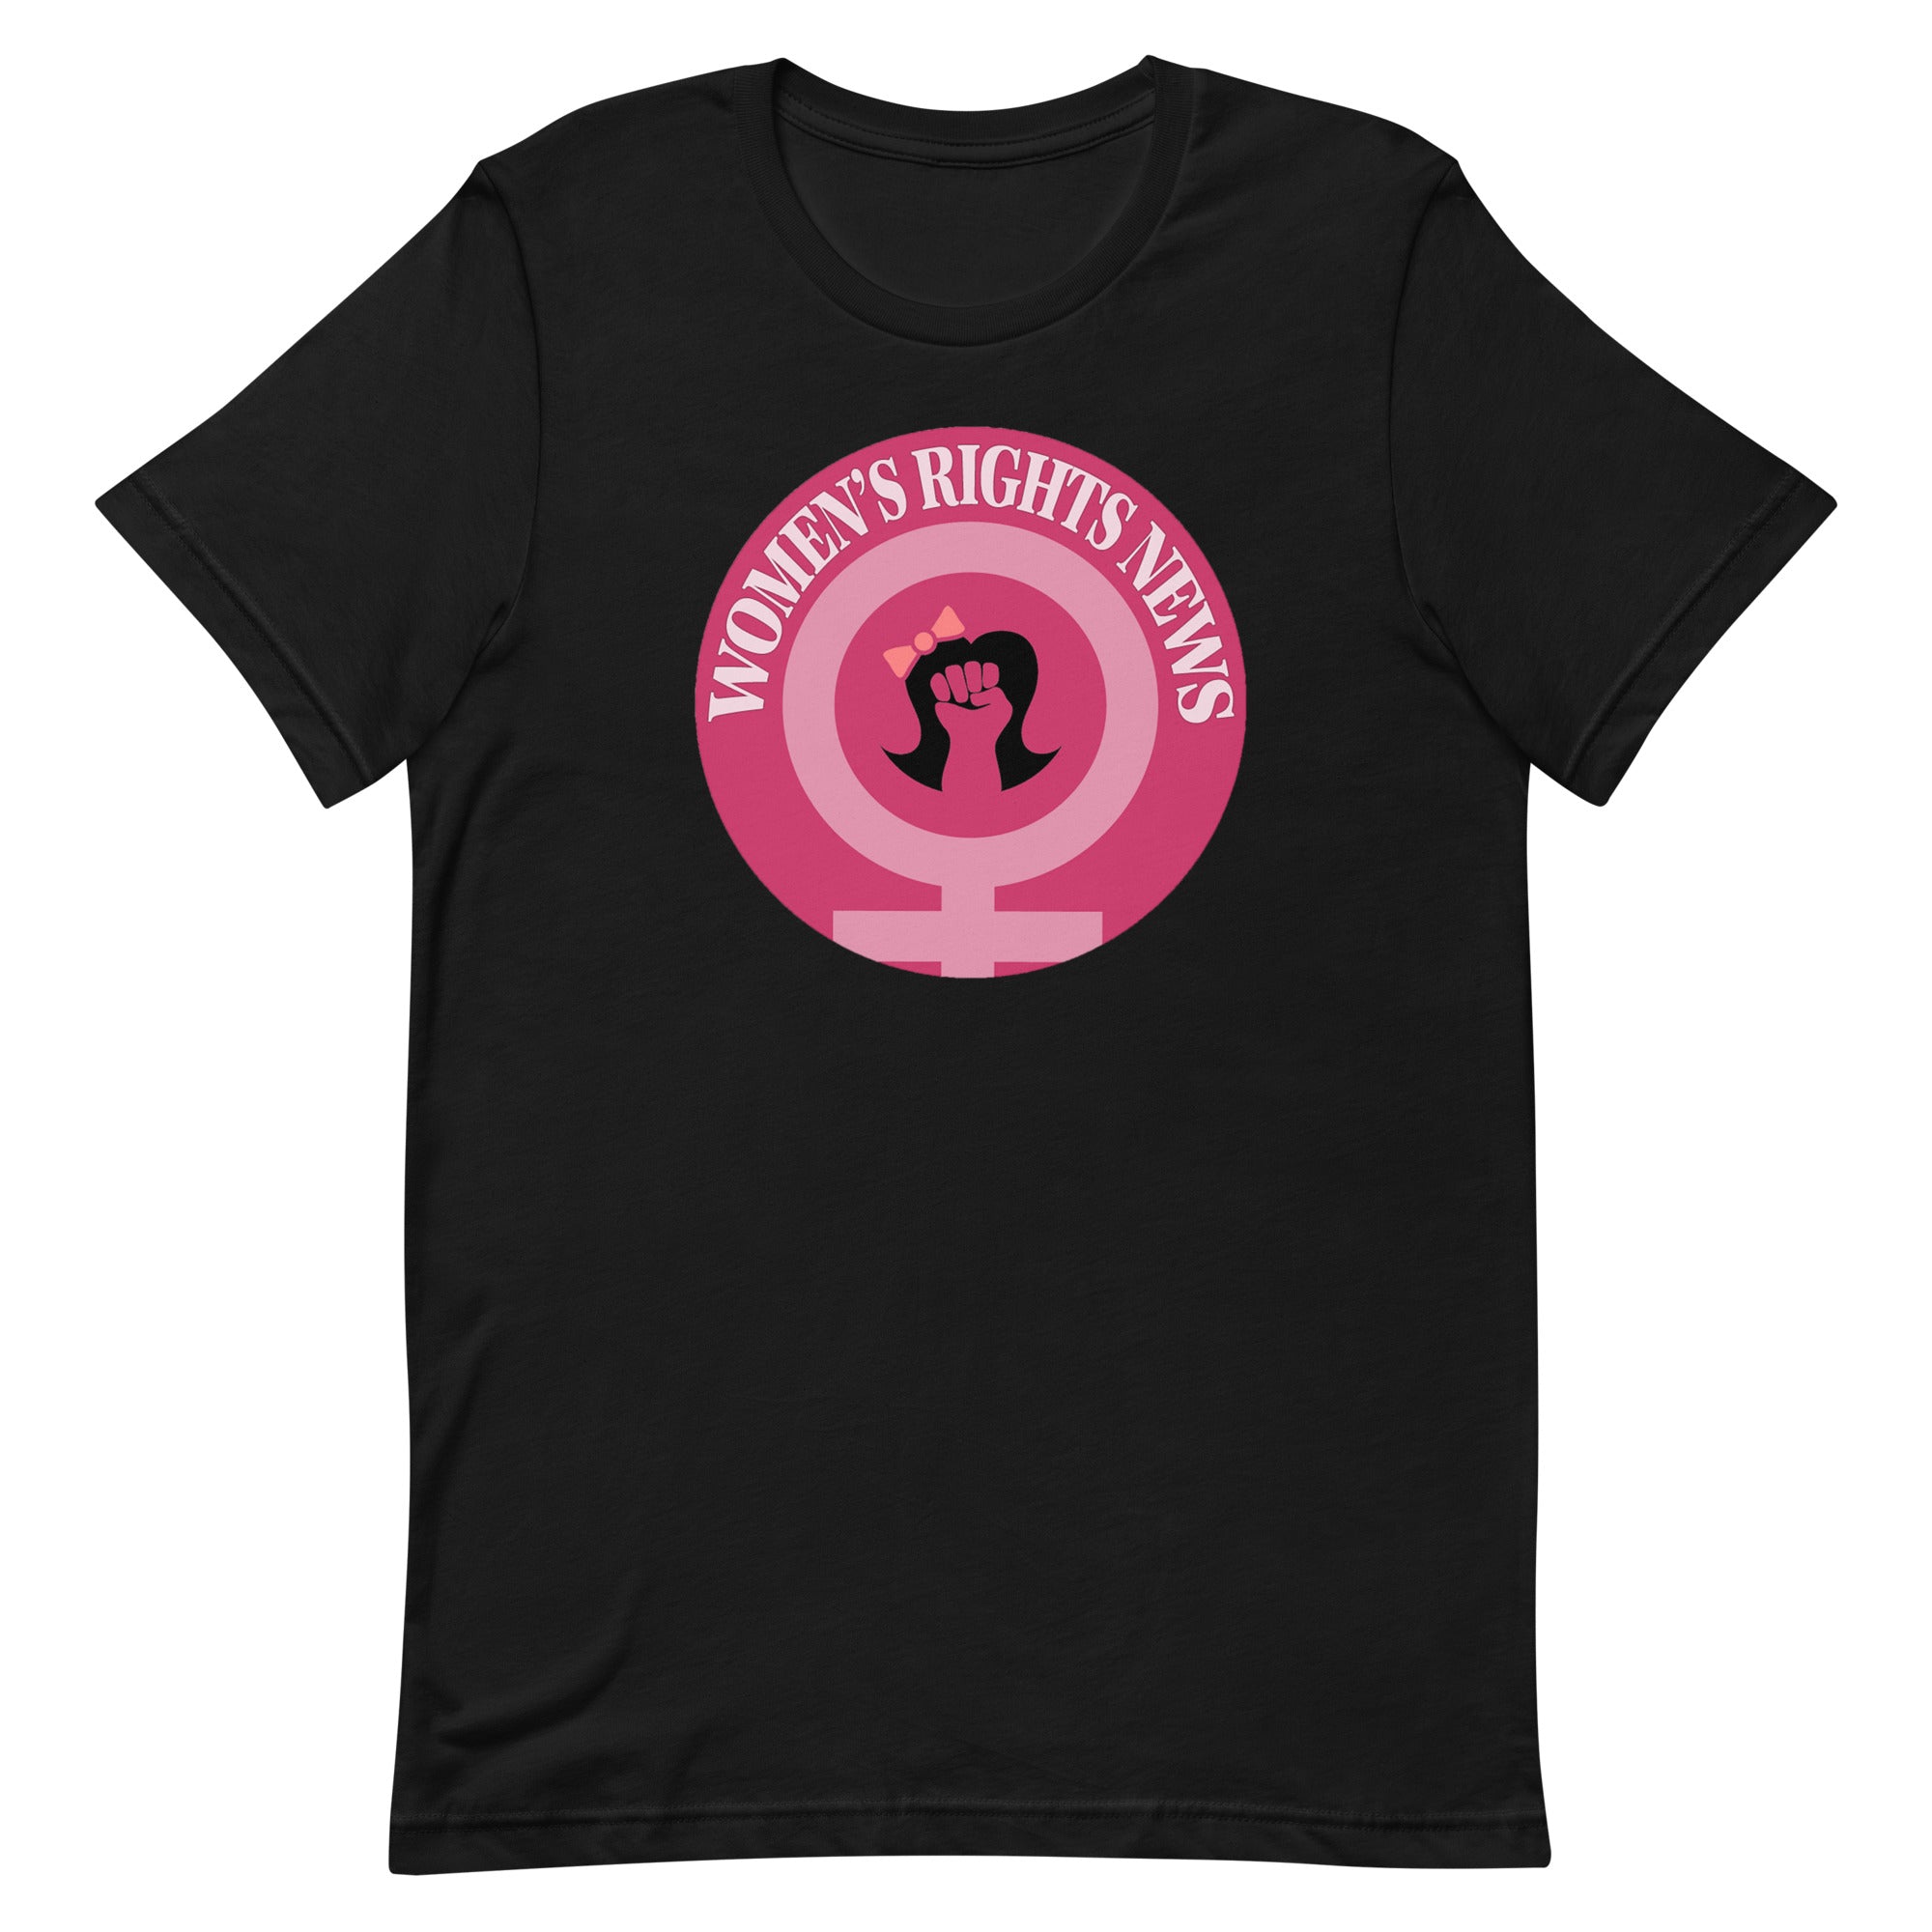 Women’s Rights News Unisex t-shirt